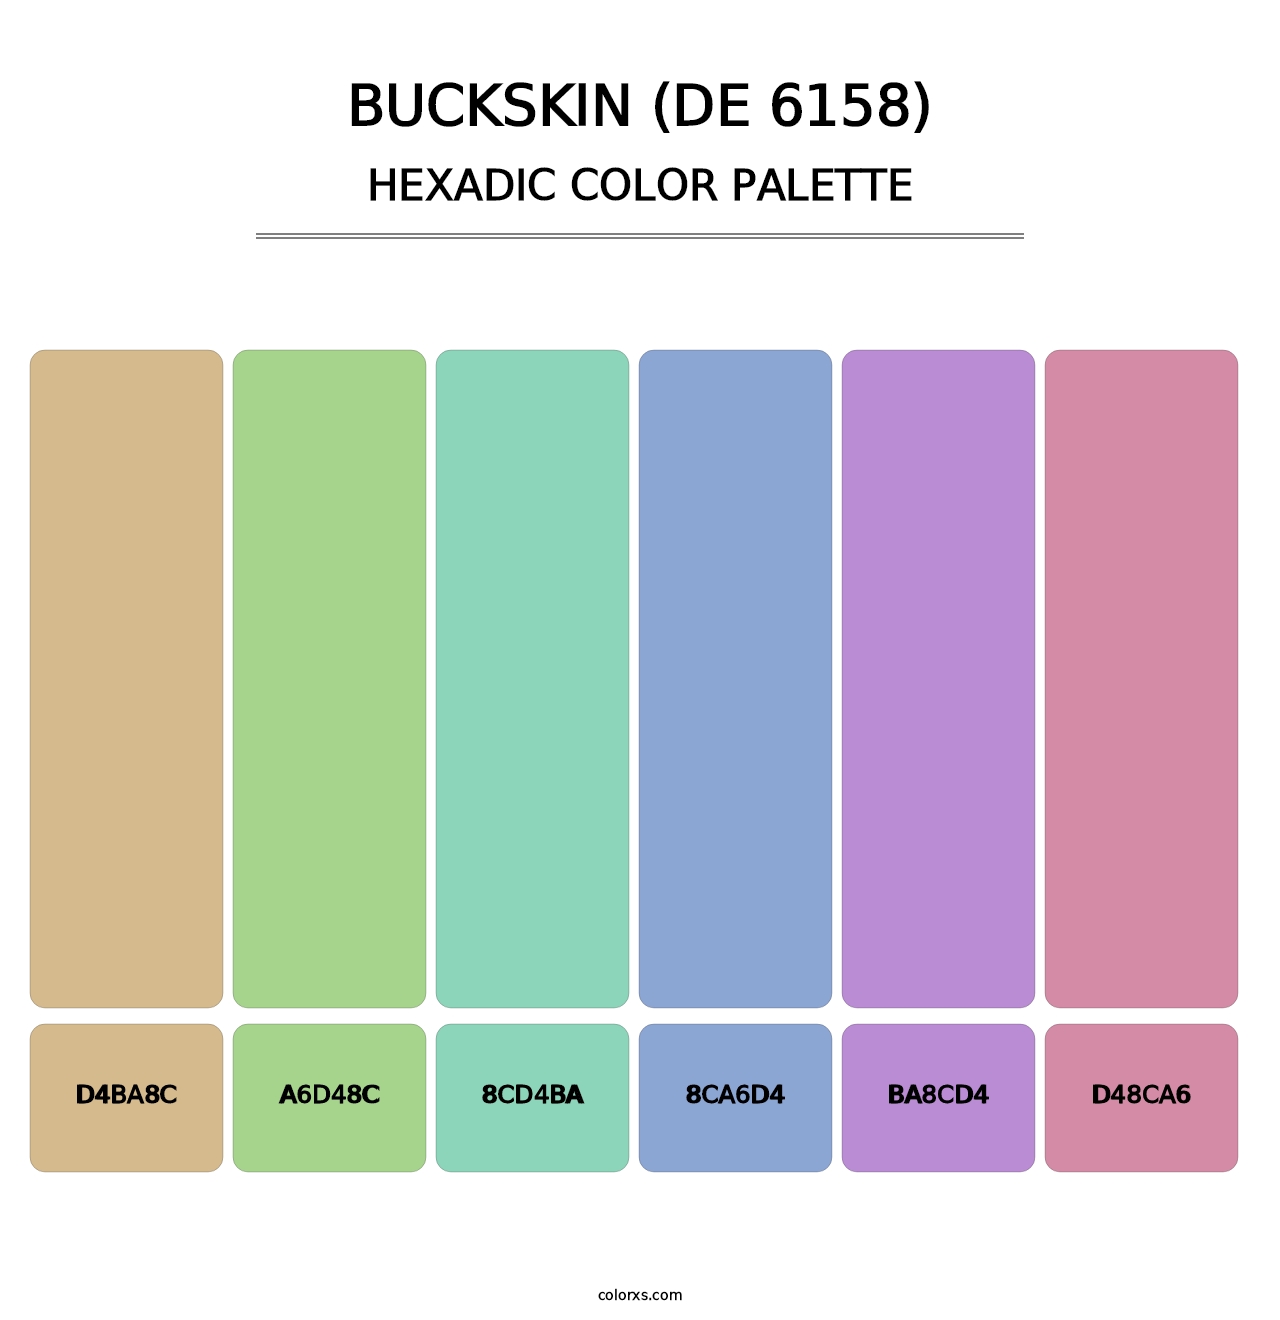 Buckskin (DE 6158) - Hexadic Color Palette